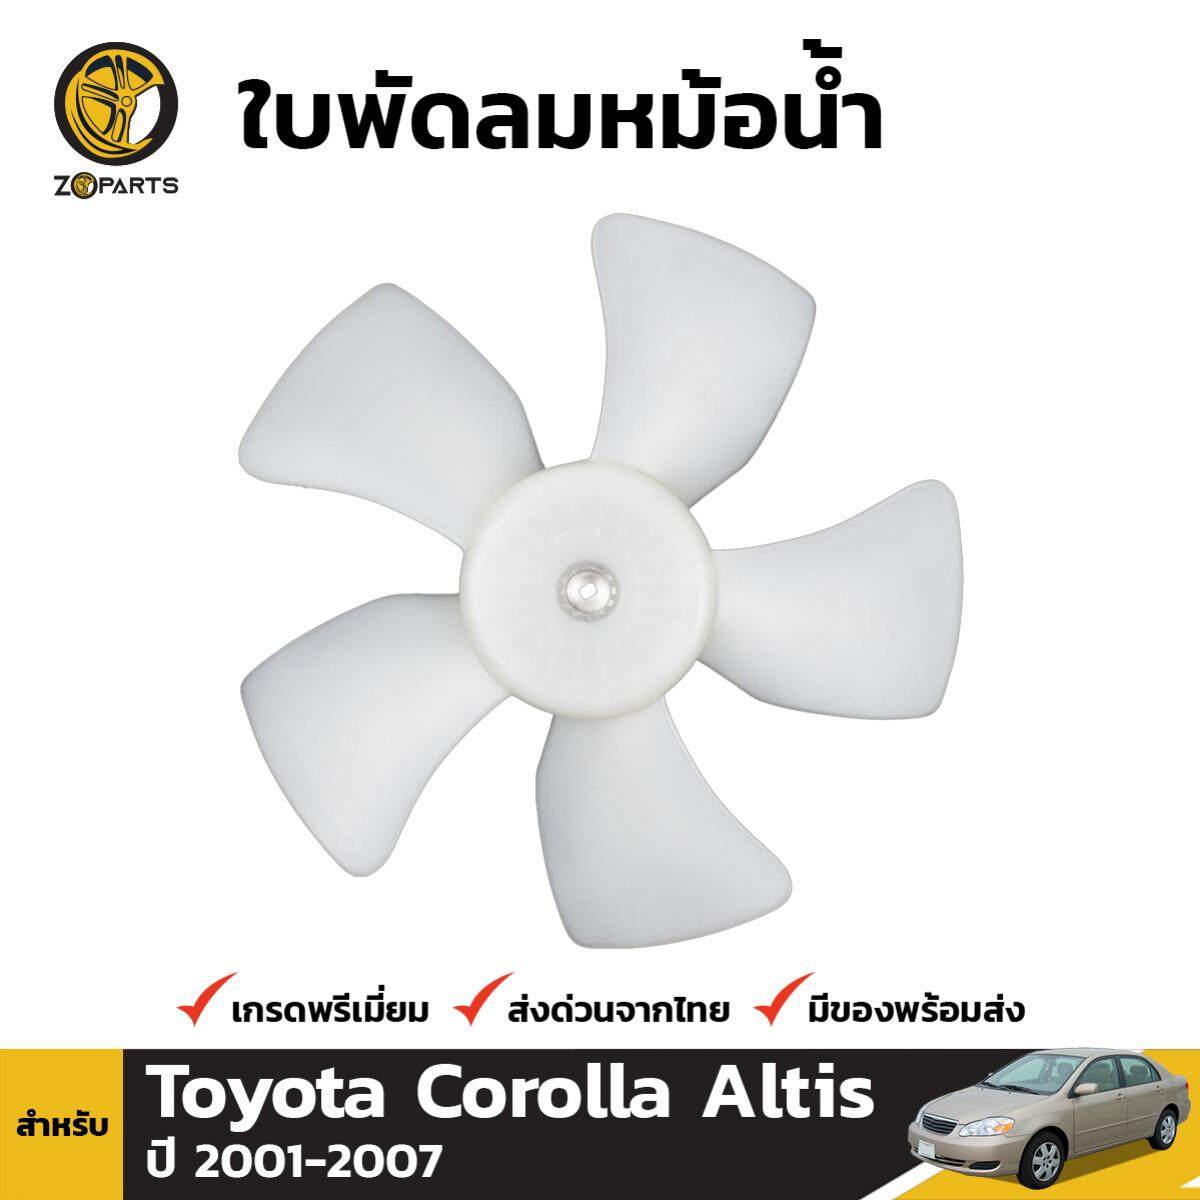 ใบพัดลมหม้อน้ำ สำหรับ Toyota Corolla Altis ปี 2001 - 2007 โตโยต้า โคโรลล่า อัลติส